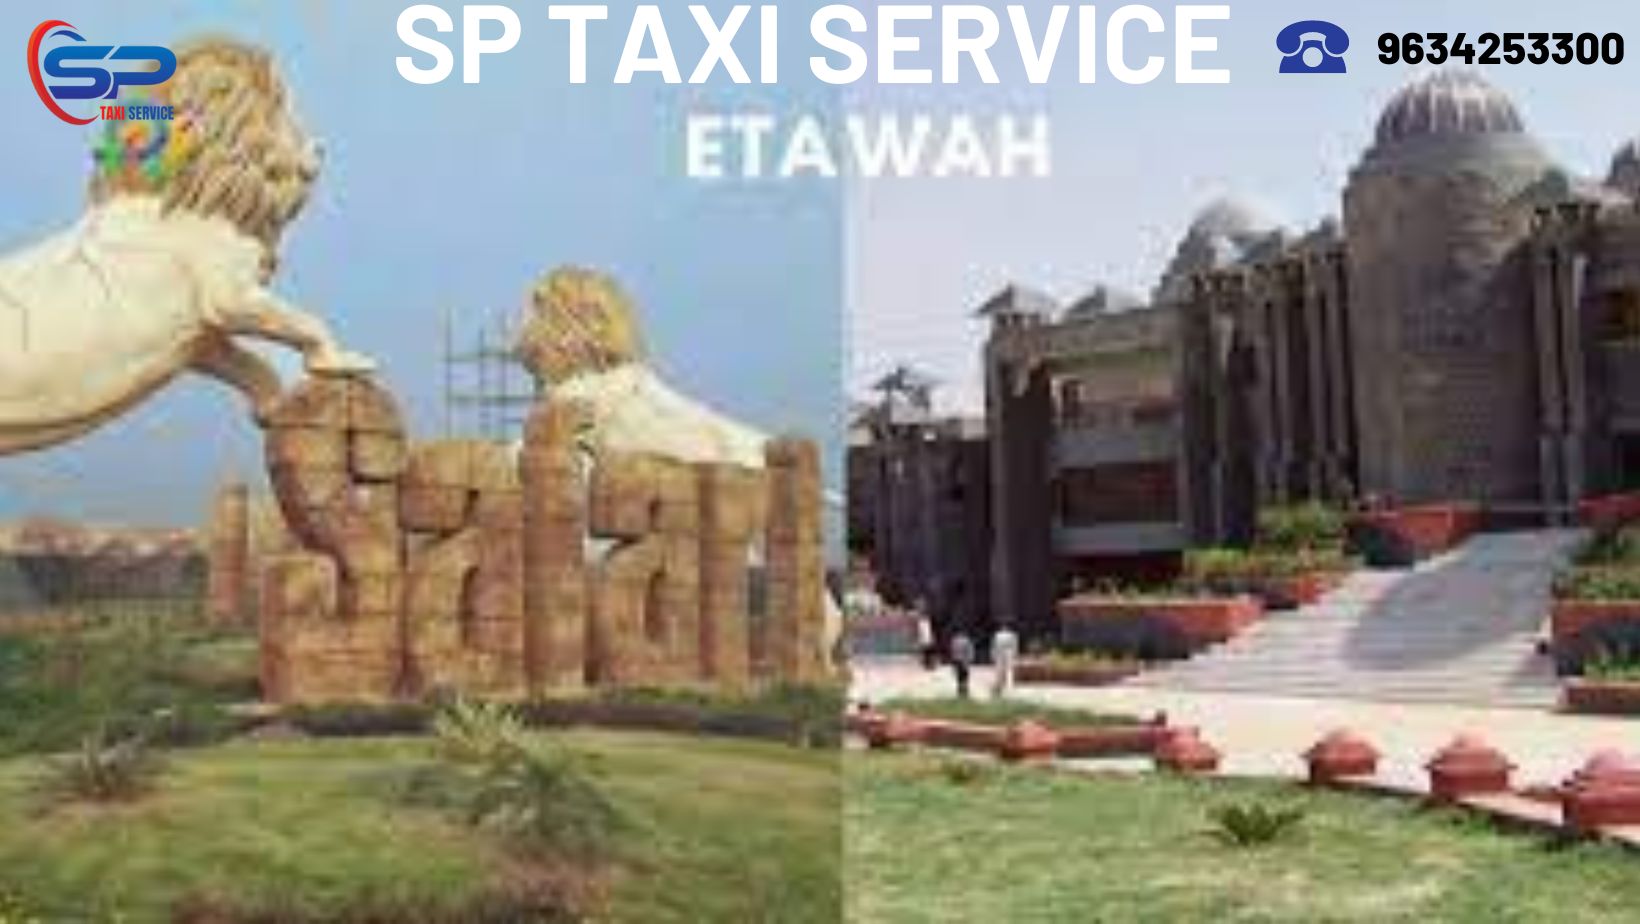 Etawah Taxi service